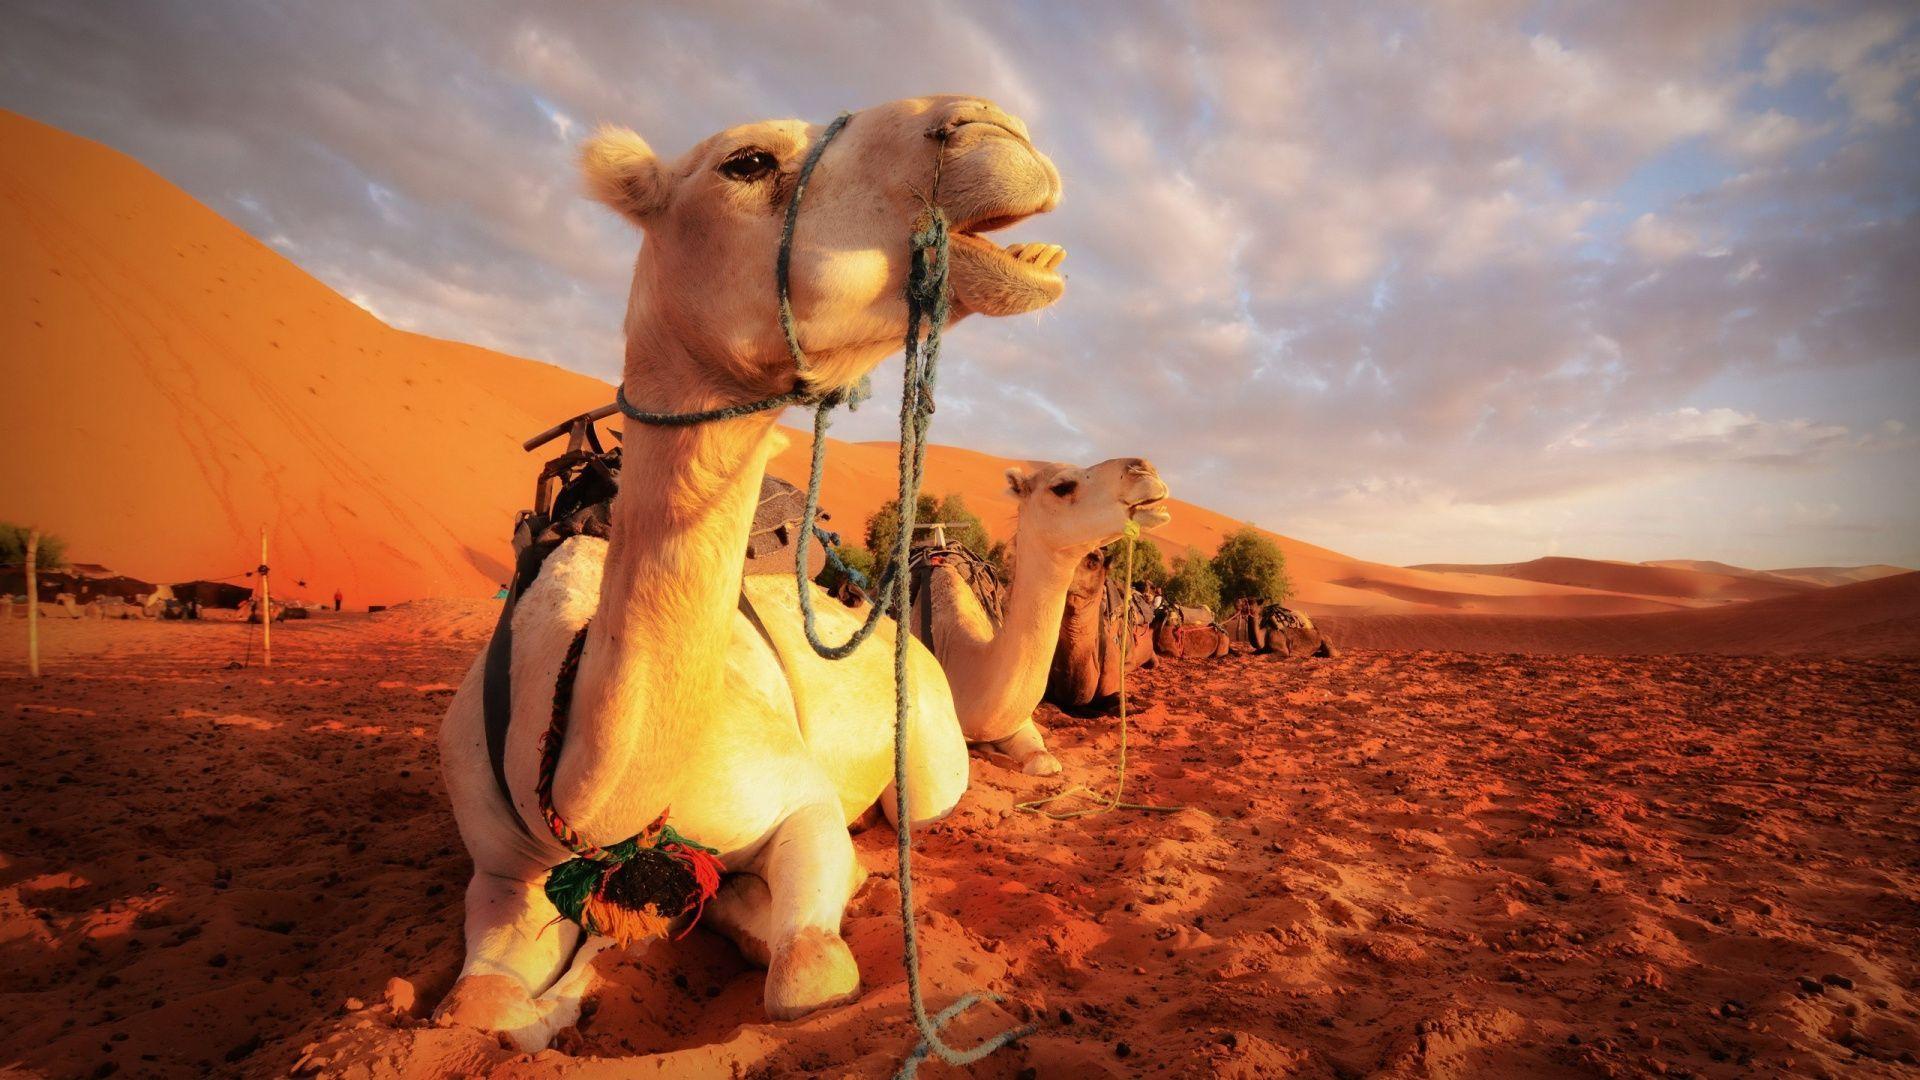 Desert Camel Hd Wallpapers - Top Free Desert Camel Hd Backgrounds